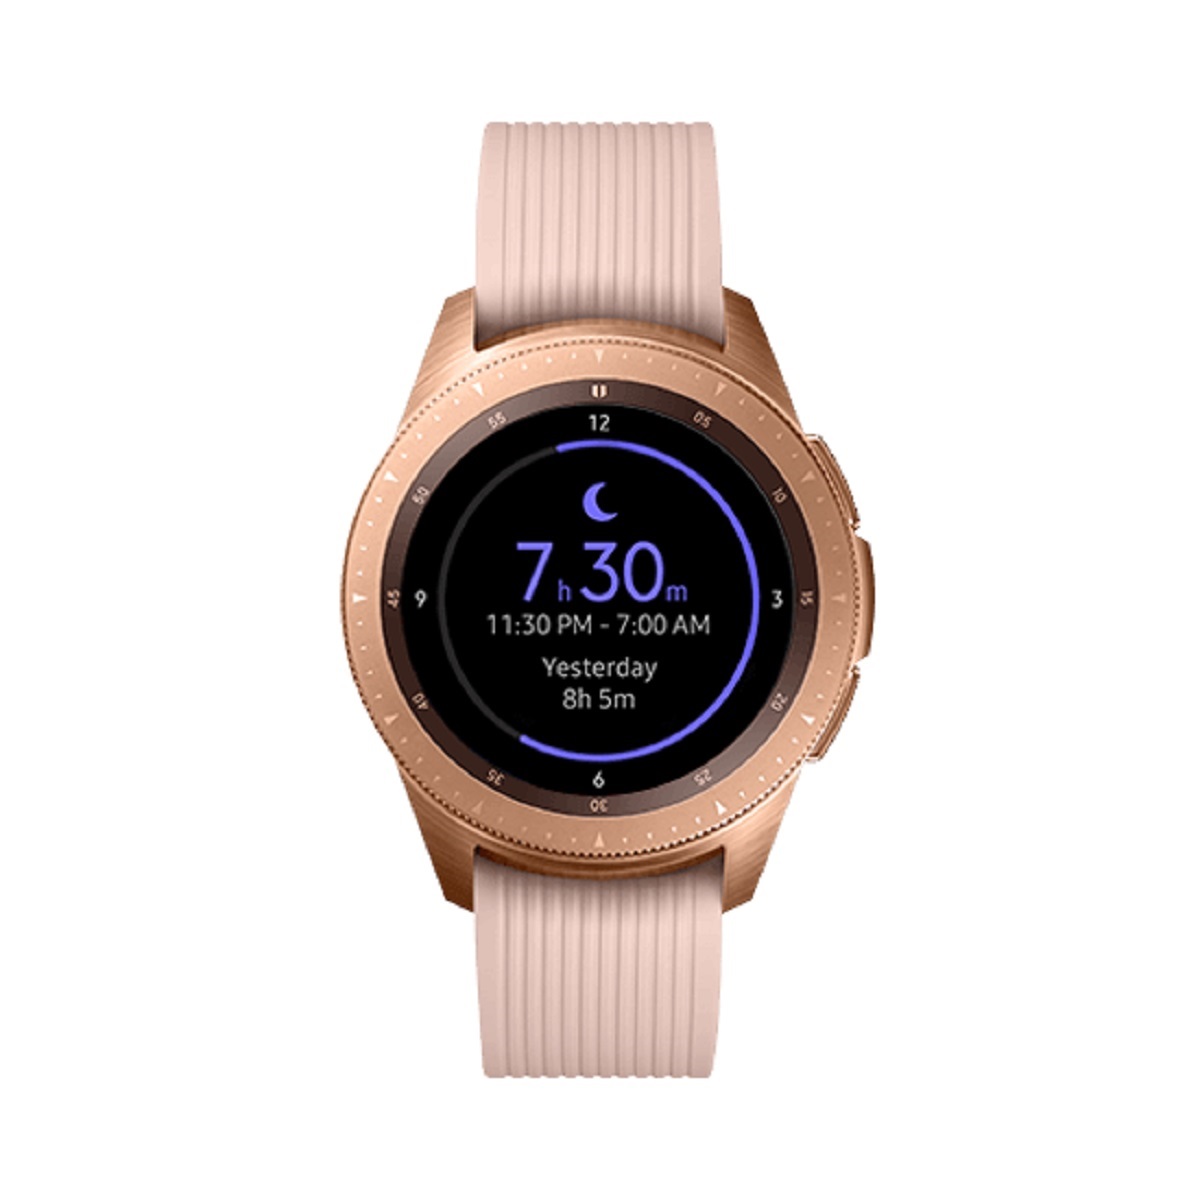 Galaxy watch r810. Samsung Galaxy watch 42mm Rose золотой. Samsung Galaxy watch SM-r810. Смарт-часы Samsung Galaxy watch 46 mm Gold. Часы самсунг Galaxy 42mm розовое.